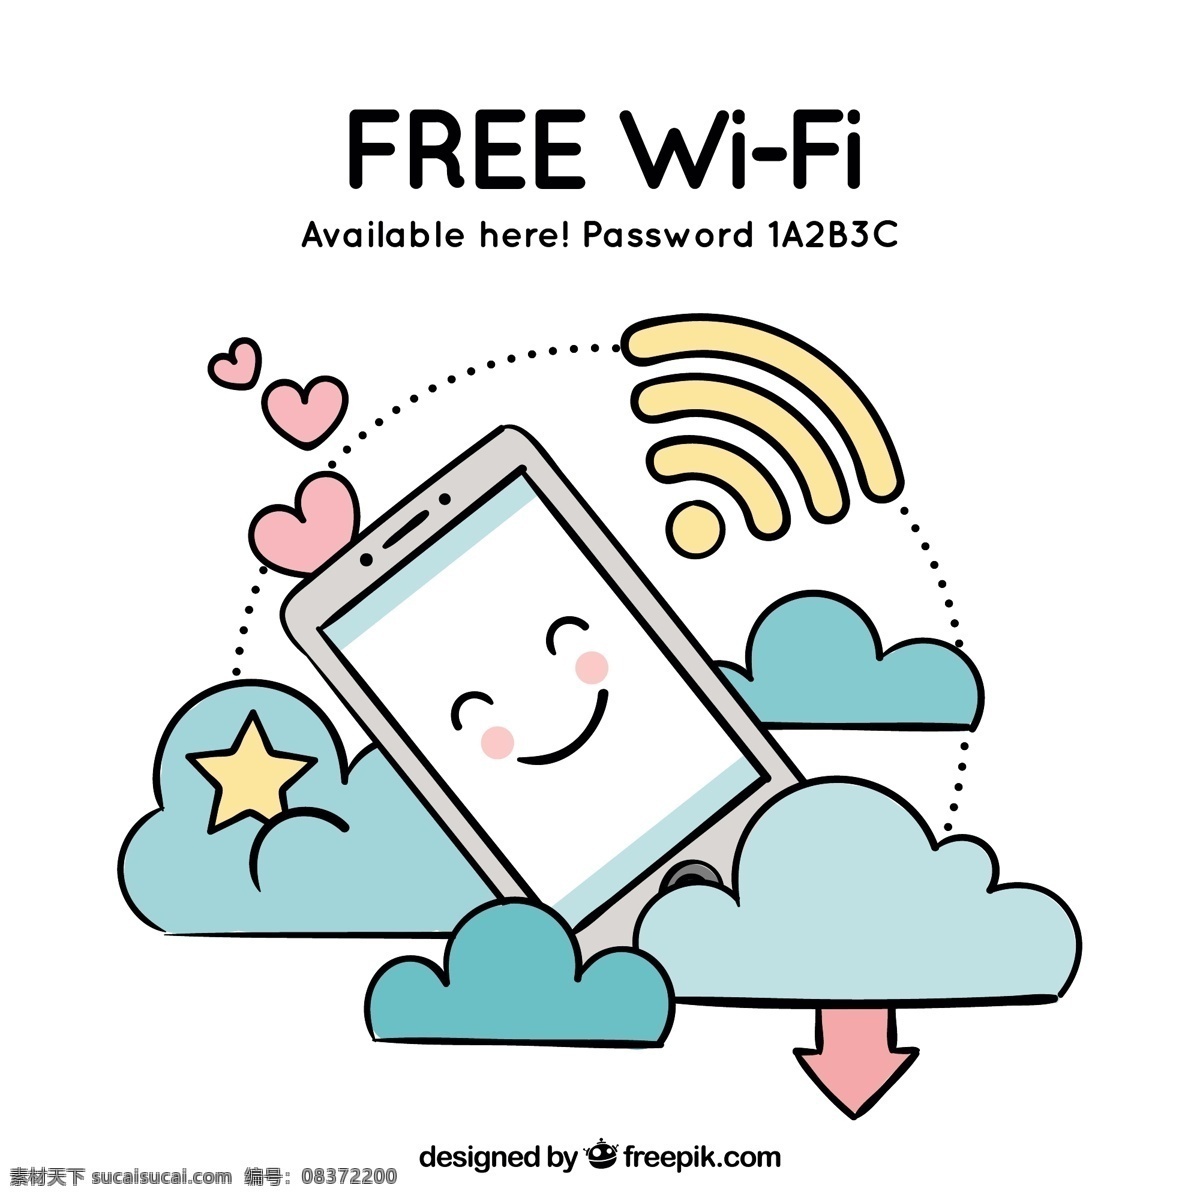 免费 wifi 智能 手机 云朵 背景 免费wifi 智能手机 云朵插图 微笑表情 红色心形图 黄色五角星 淘宝点缀插图 互联网 元素 图标